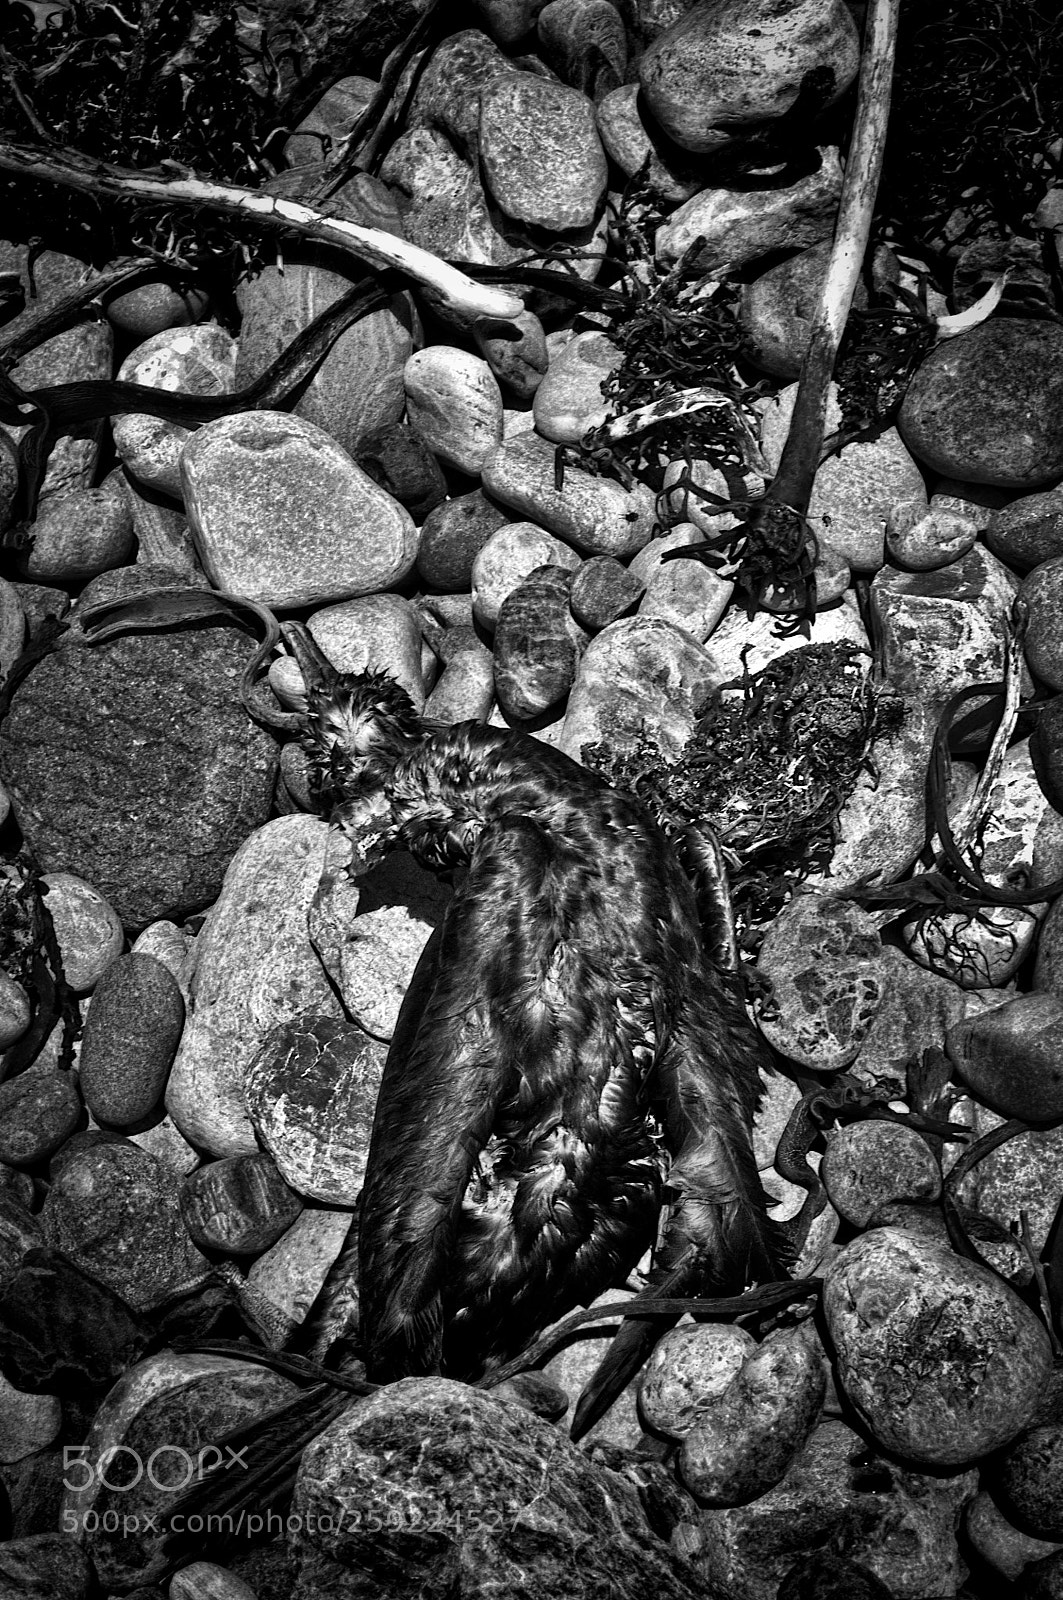 Nikon D300 sample photo. Dead seagull photography